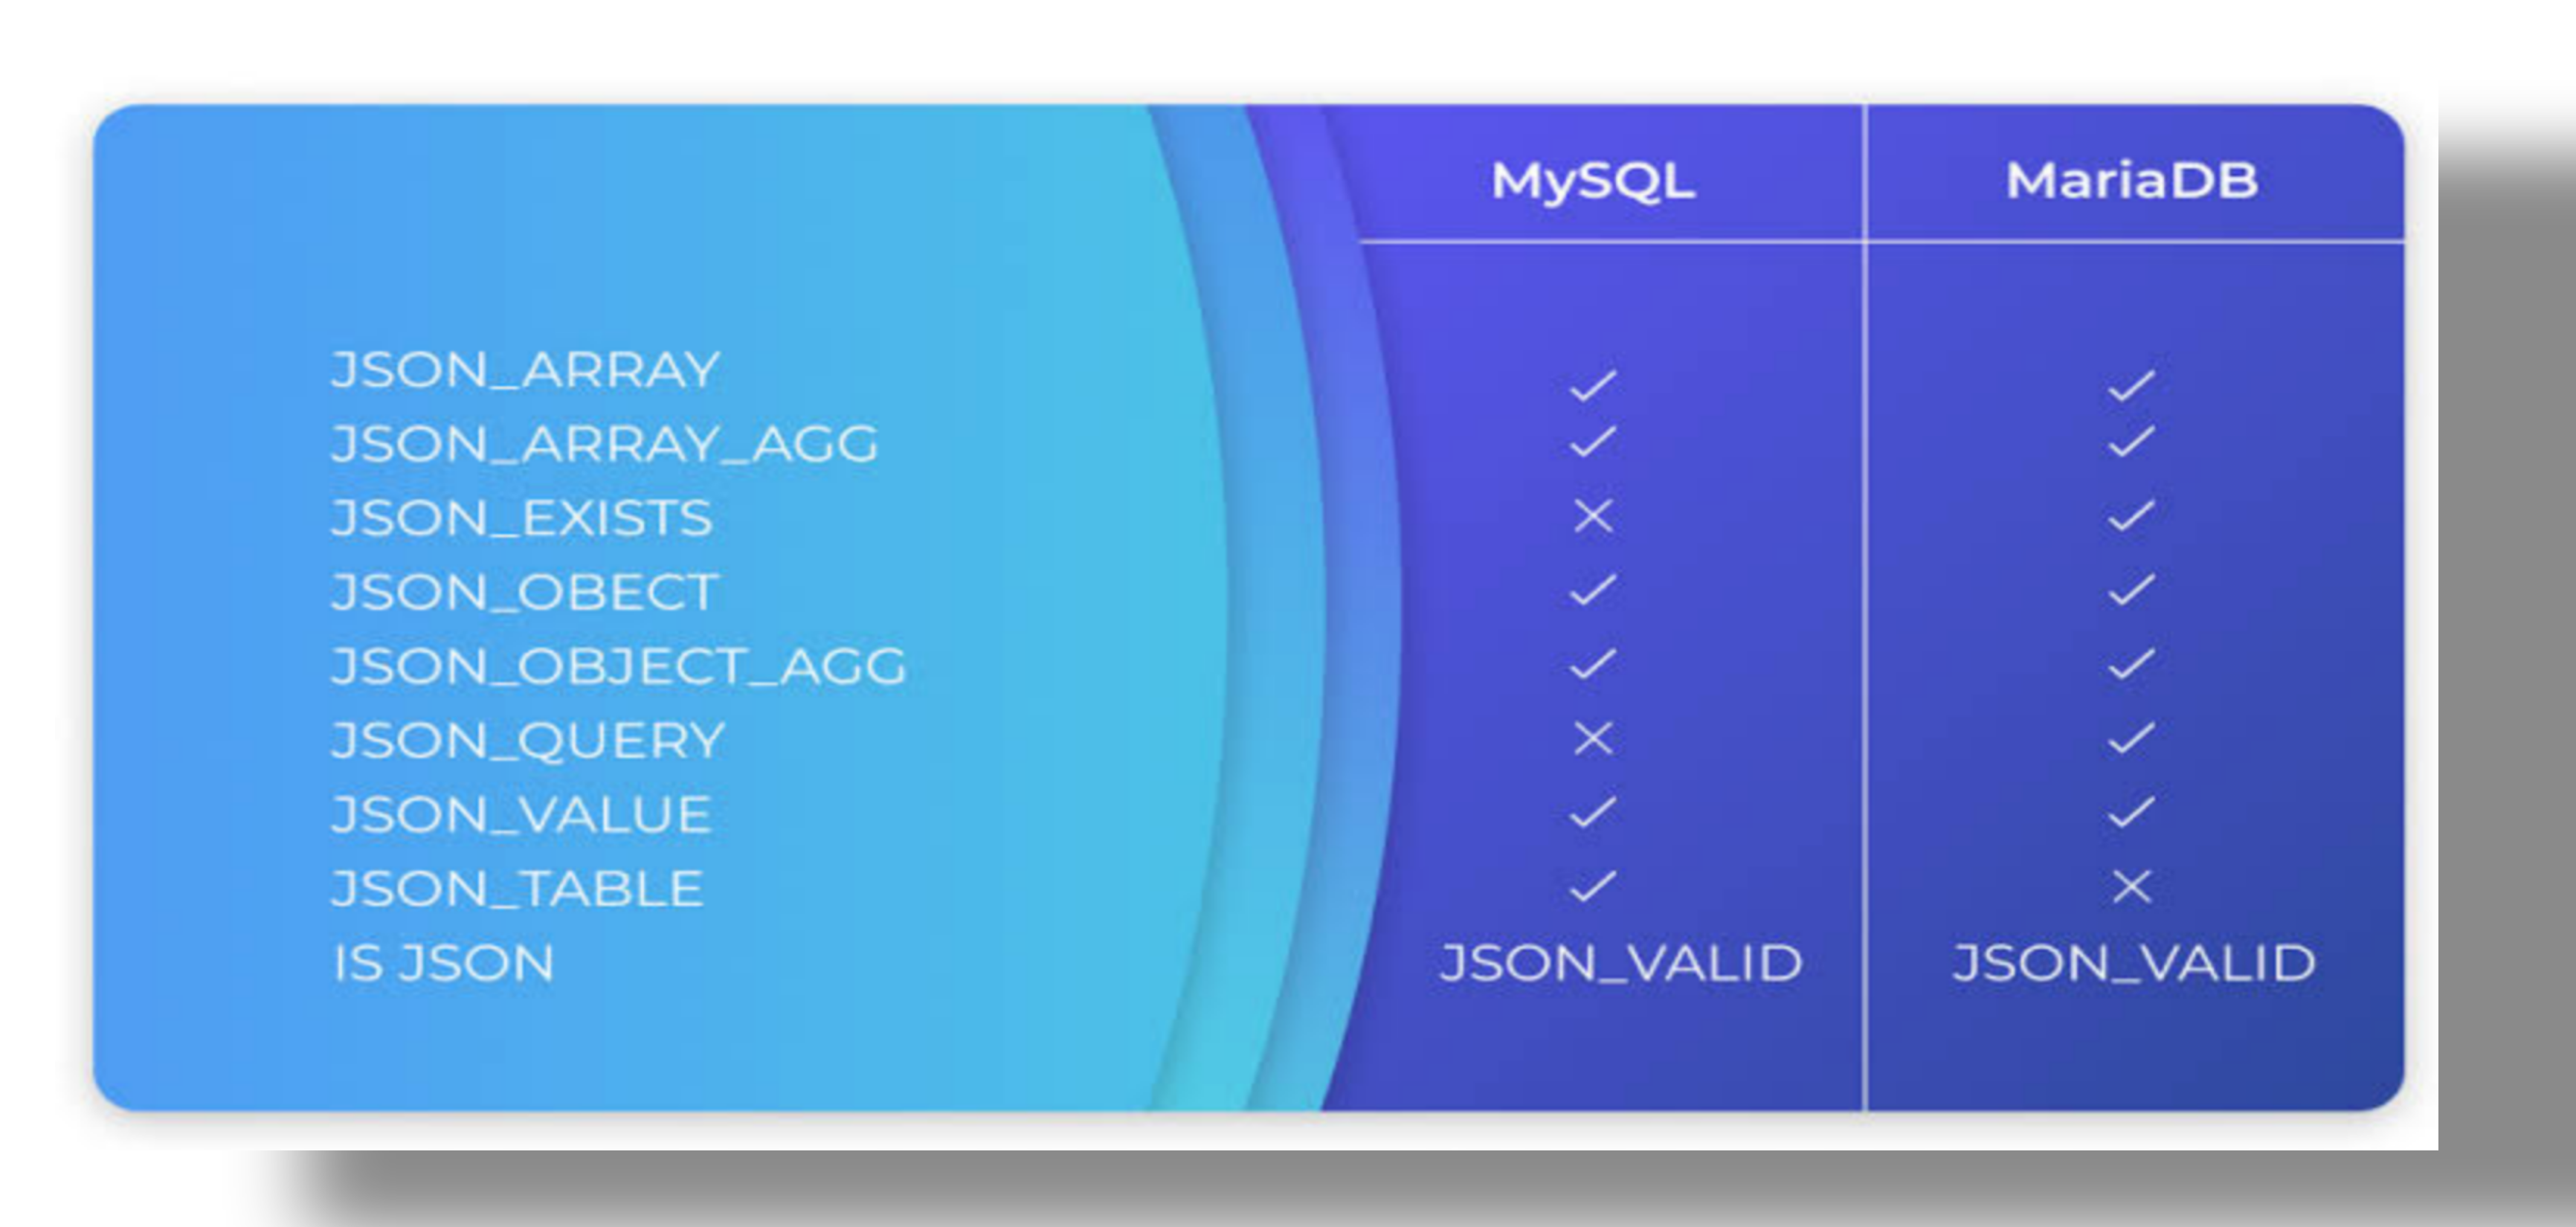 Comparing MariaDB and MySQL